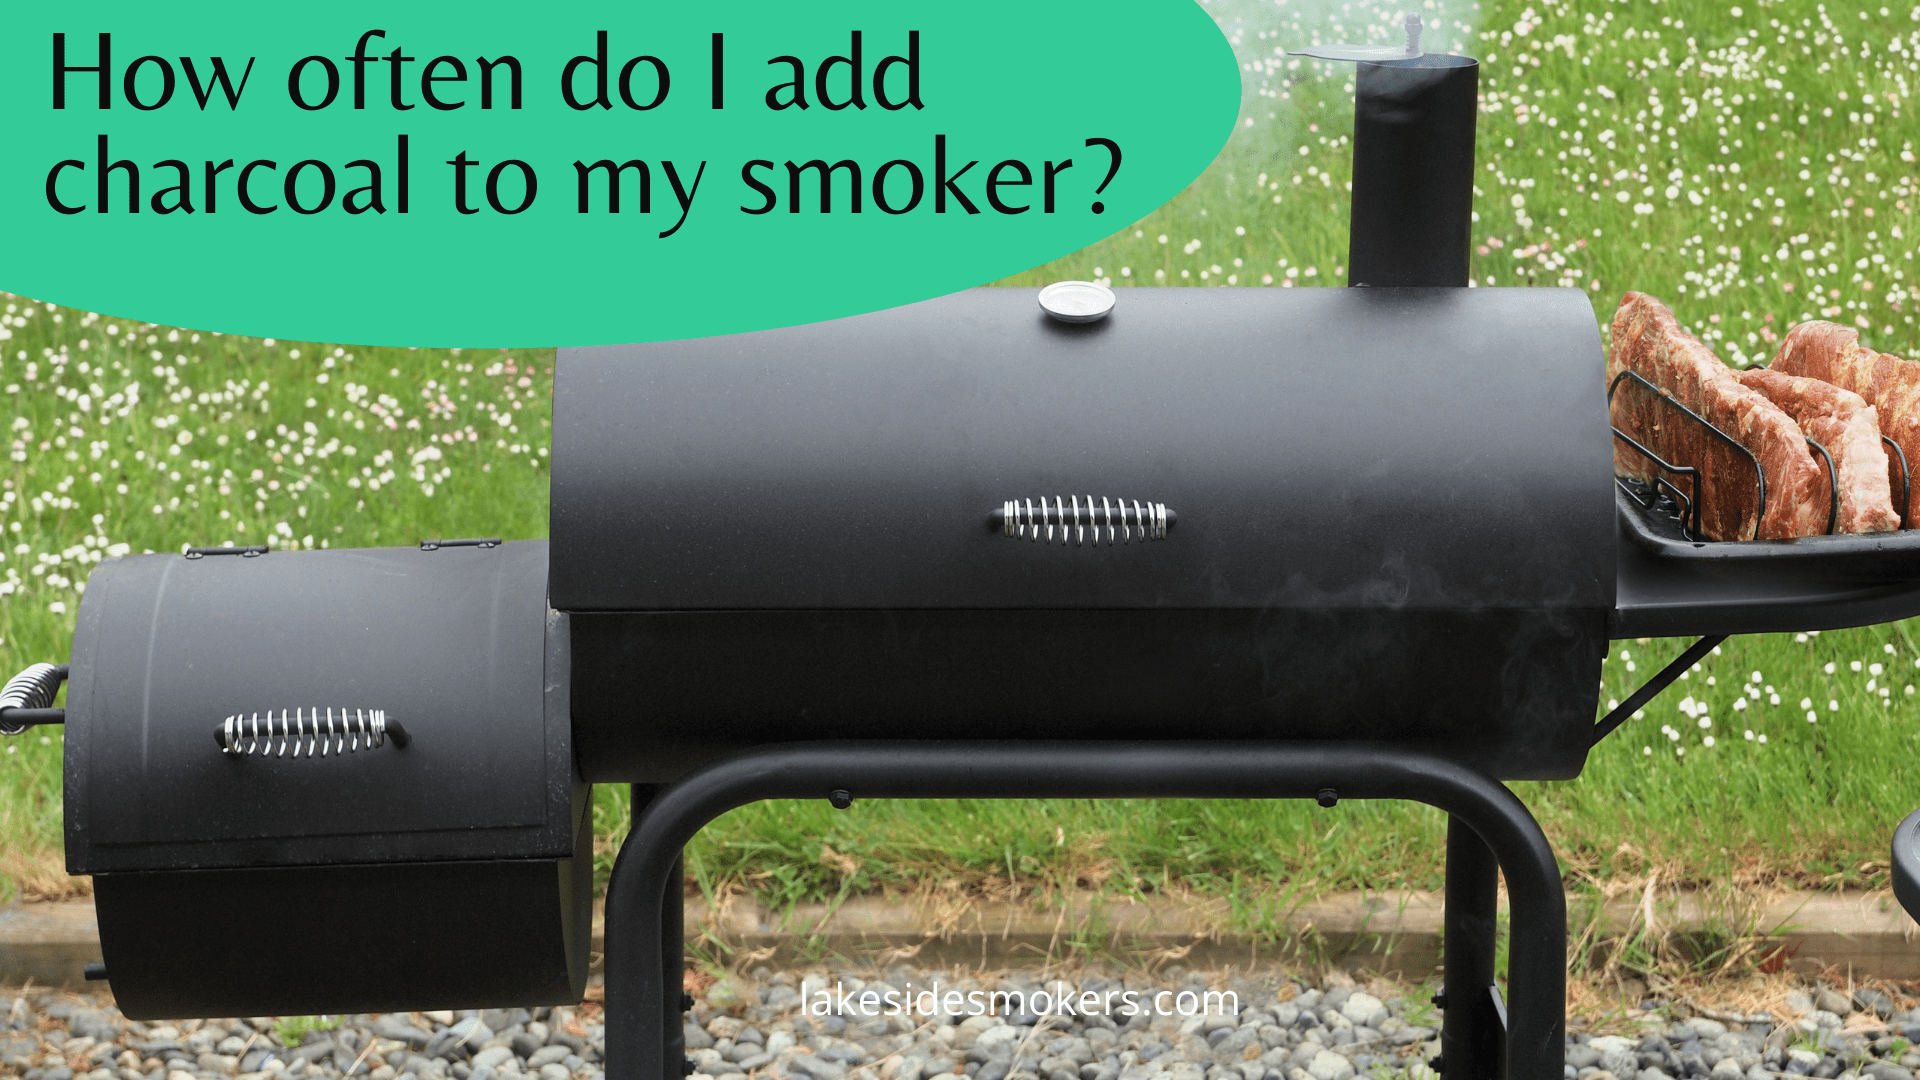 Как часто я могу добавлять древесный уголь курильщику? Проверить температуру